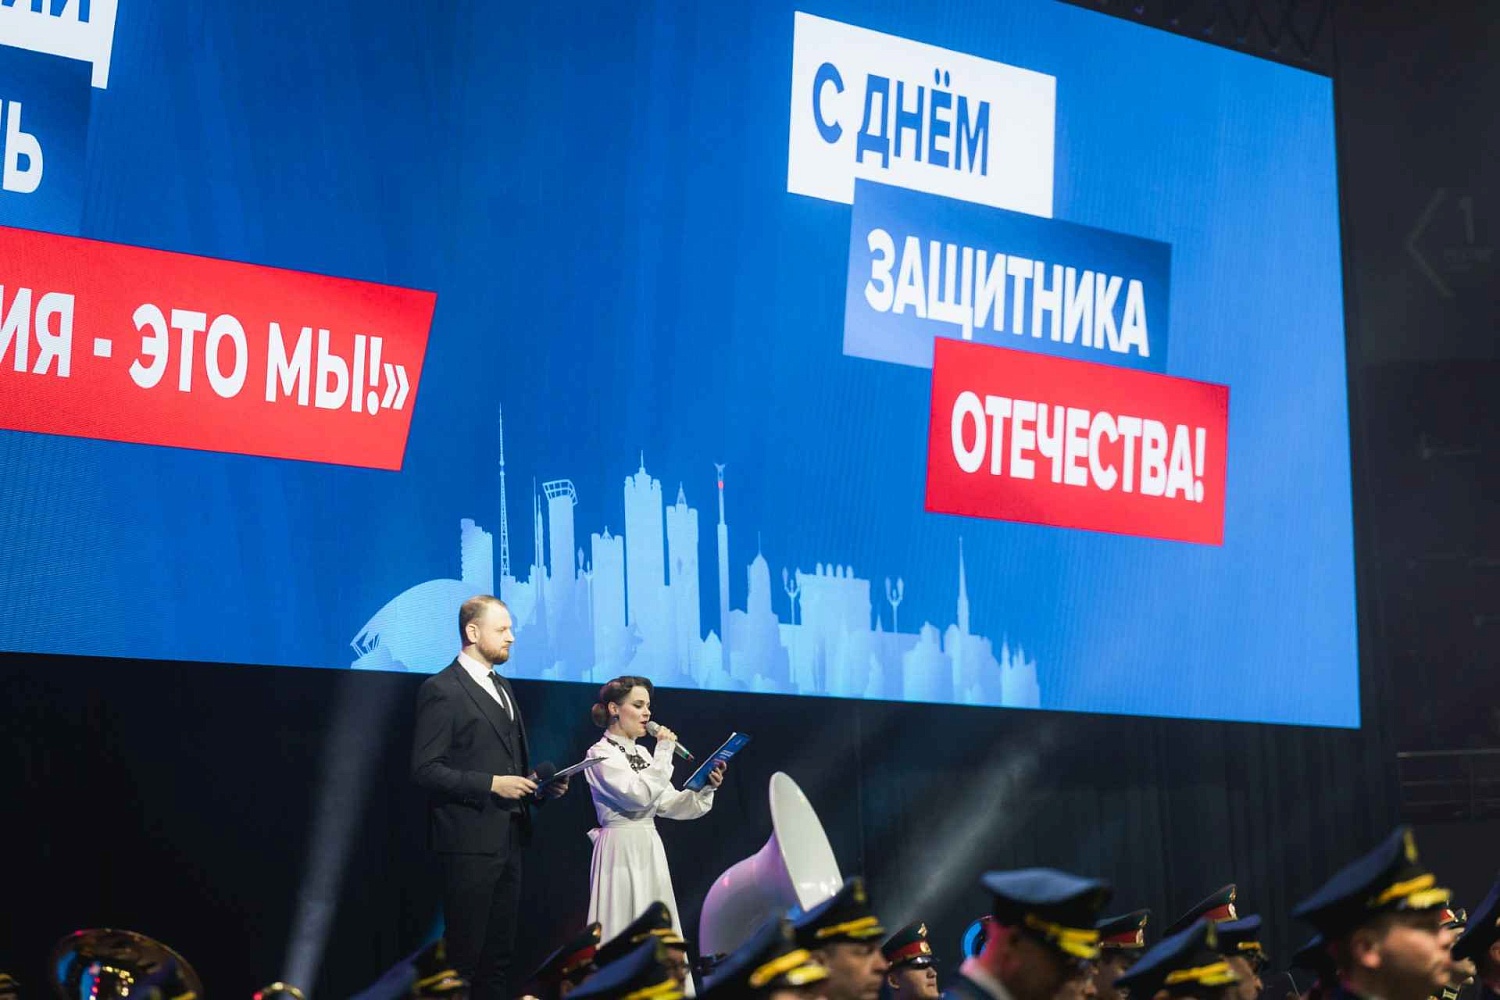 Патриотический фестиваль "Сильная Россия - это мы!"